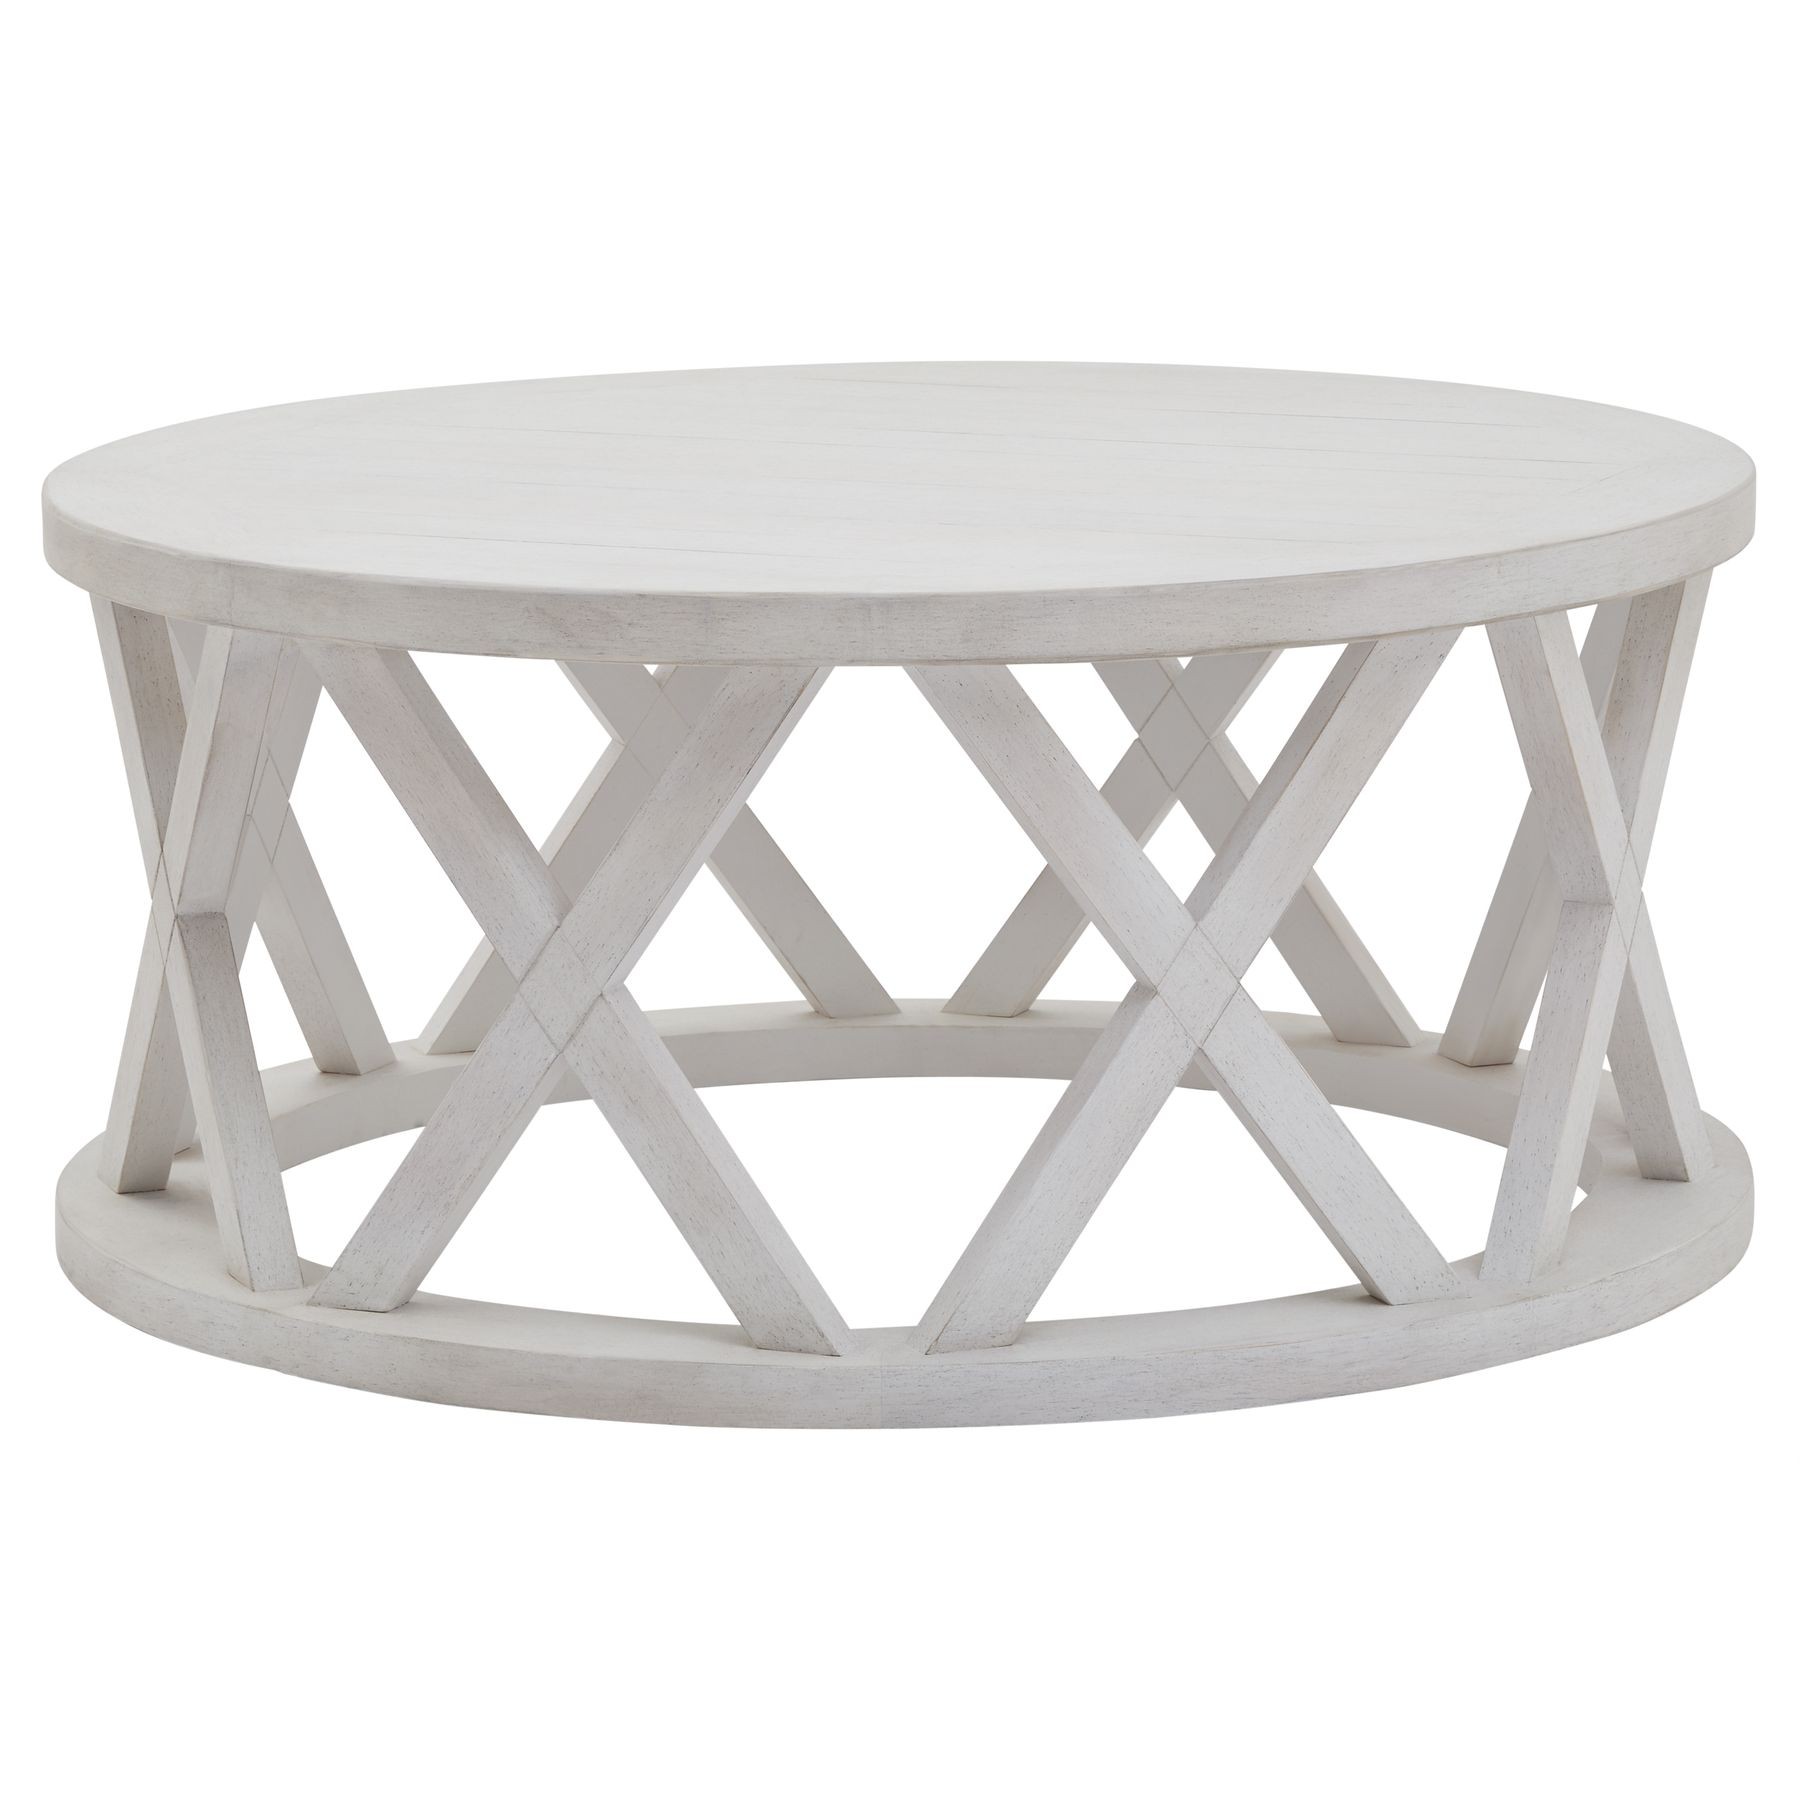 Estila Luxusní kulatý konferenční stolek Laticia Blanca s dekorativní konstrukcí ve venkovském stylu bílé barvy 100 cm